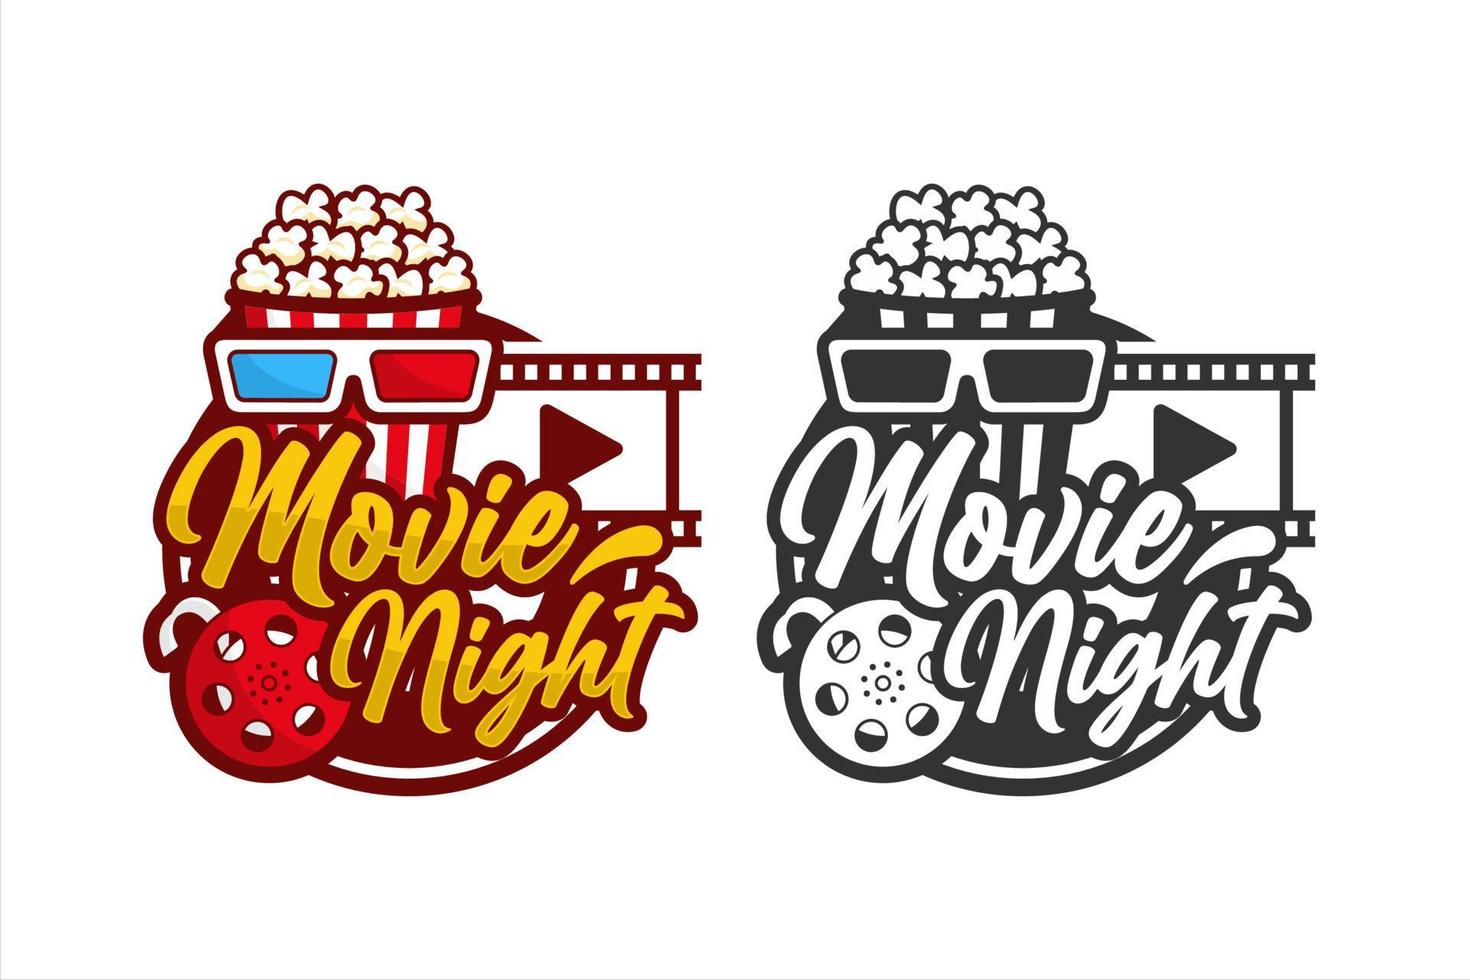 Popcorn movie night design premium logo vector